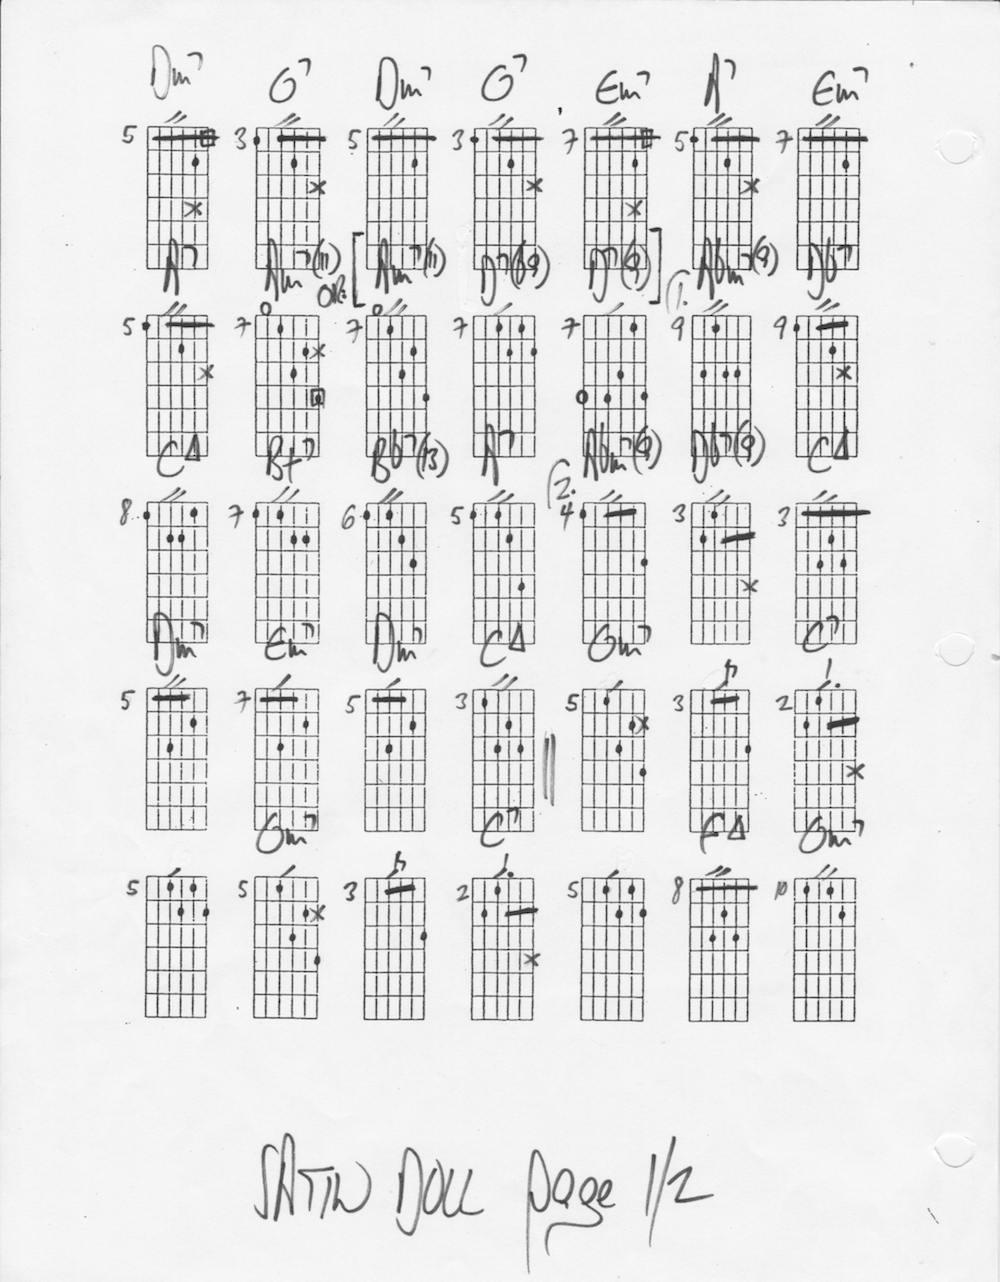 Satin Doll chord melody - Page 1/2 - La Chaîne Guitare